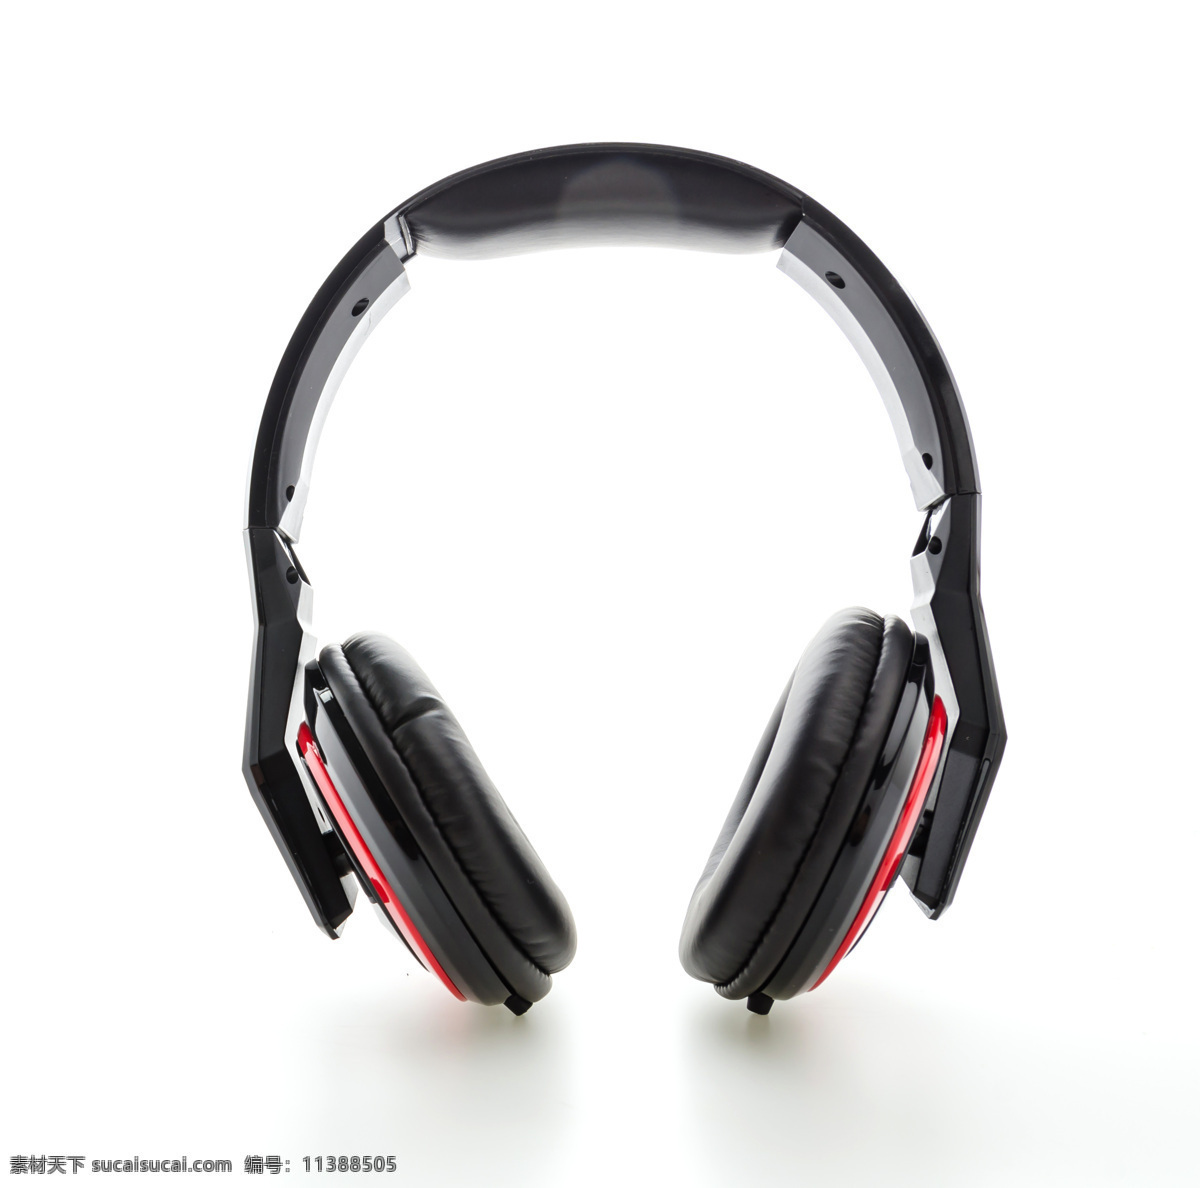 红色 耳麦 红色耳麦图片 耳机 耳机线 耳机设备 音响设备 影音娱乐 生活百科 白色